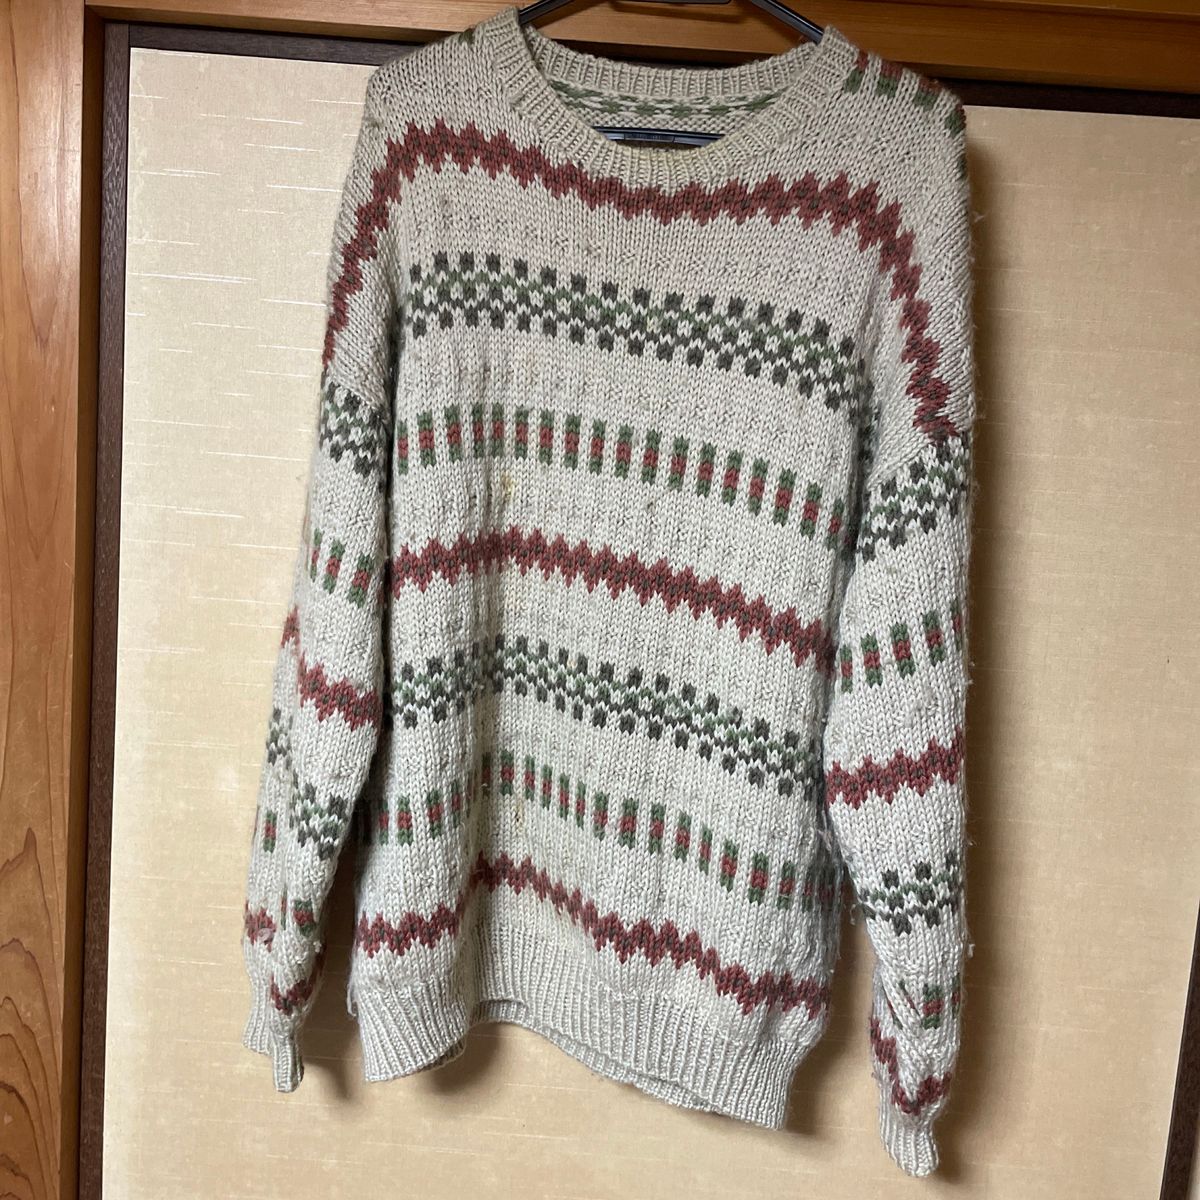 売れたかうちんと、同じ寸法で、同じ人が、半年かけて制作。手編みの柄が他にない、ベージュ、茶系ベースの極太毛糸のまる首ニットセーター